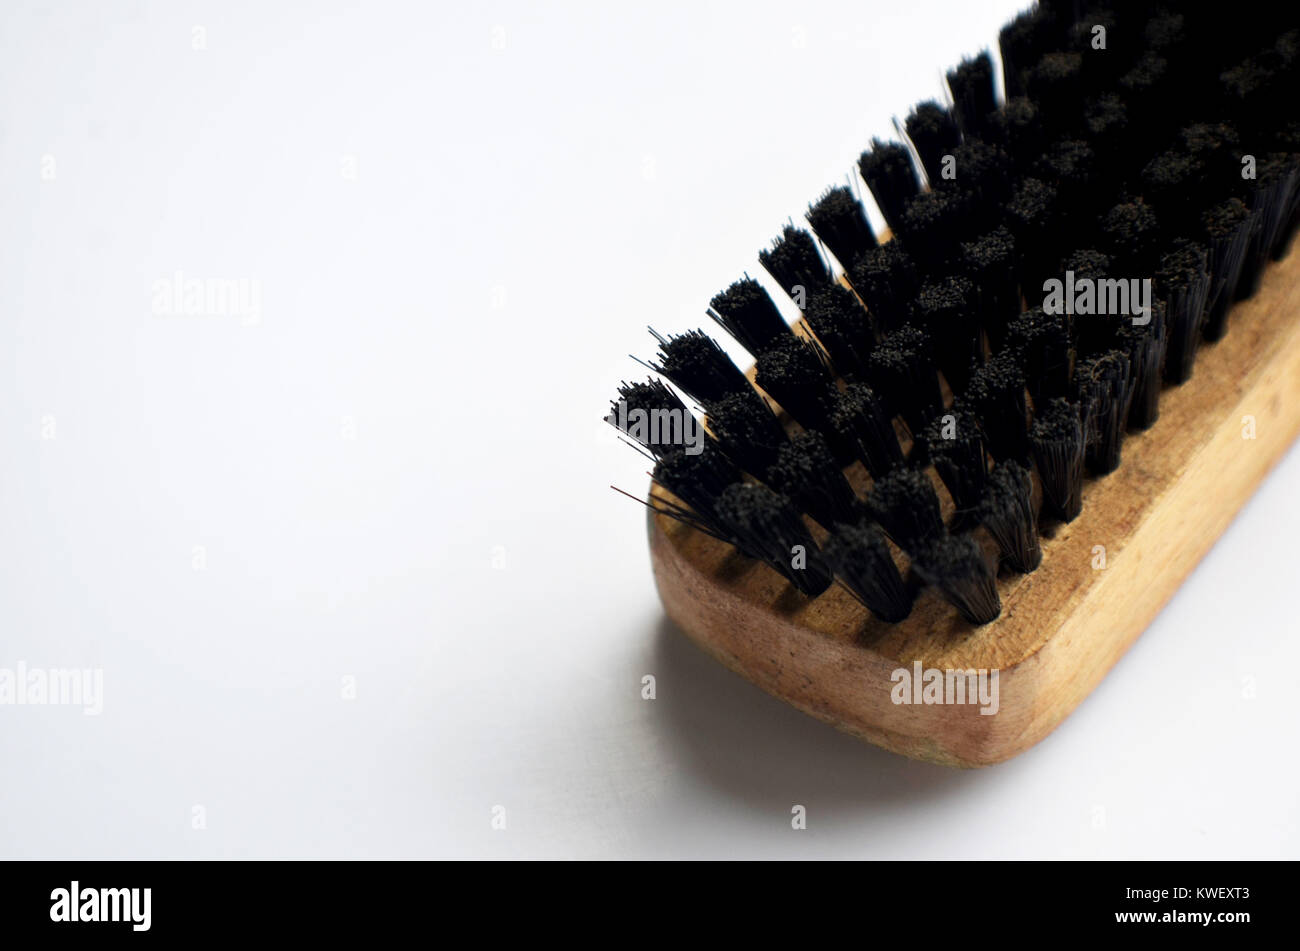 Shoe brush close up Stock Photo